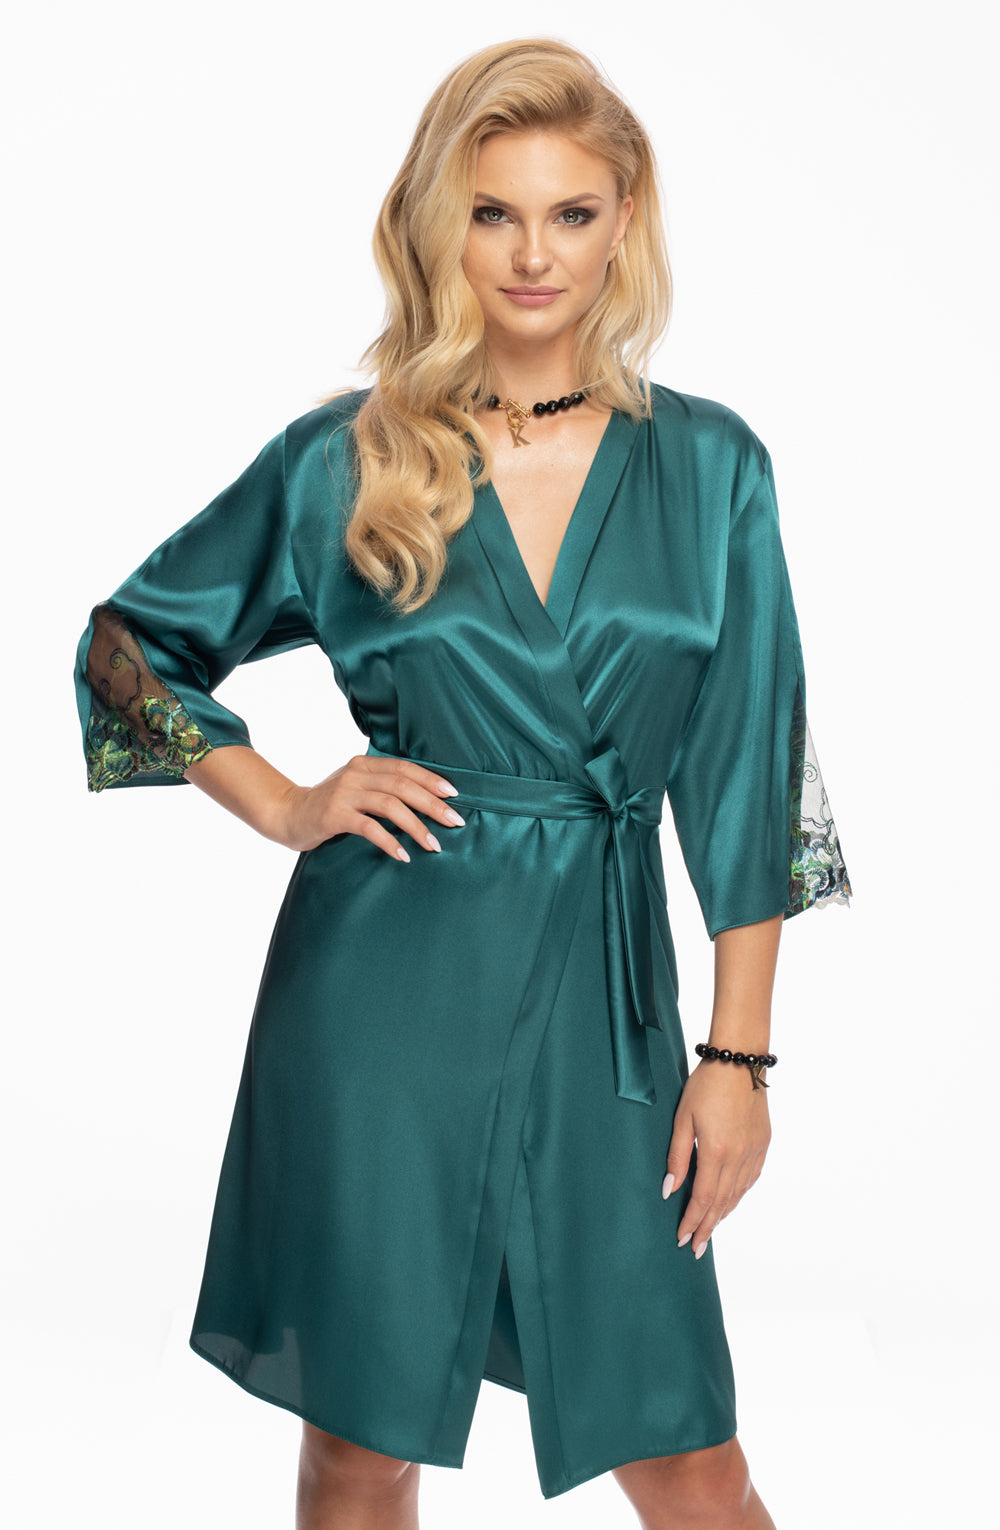 Irall Nikita Dressing Gown Jade - PureDiva